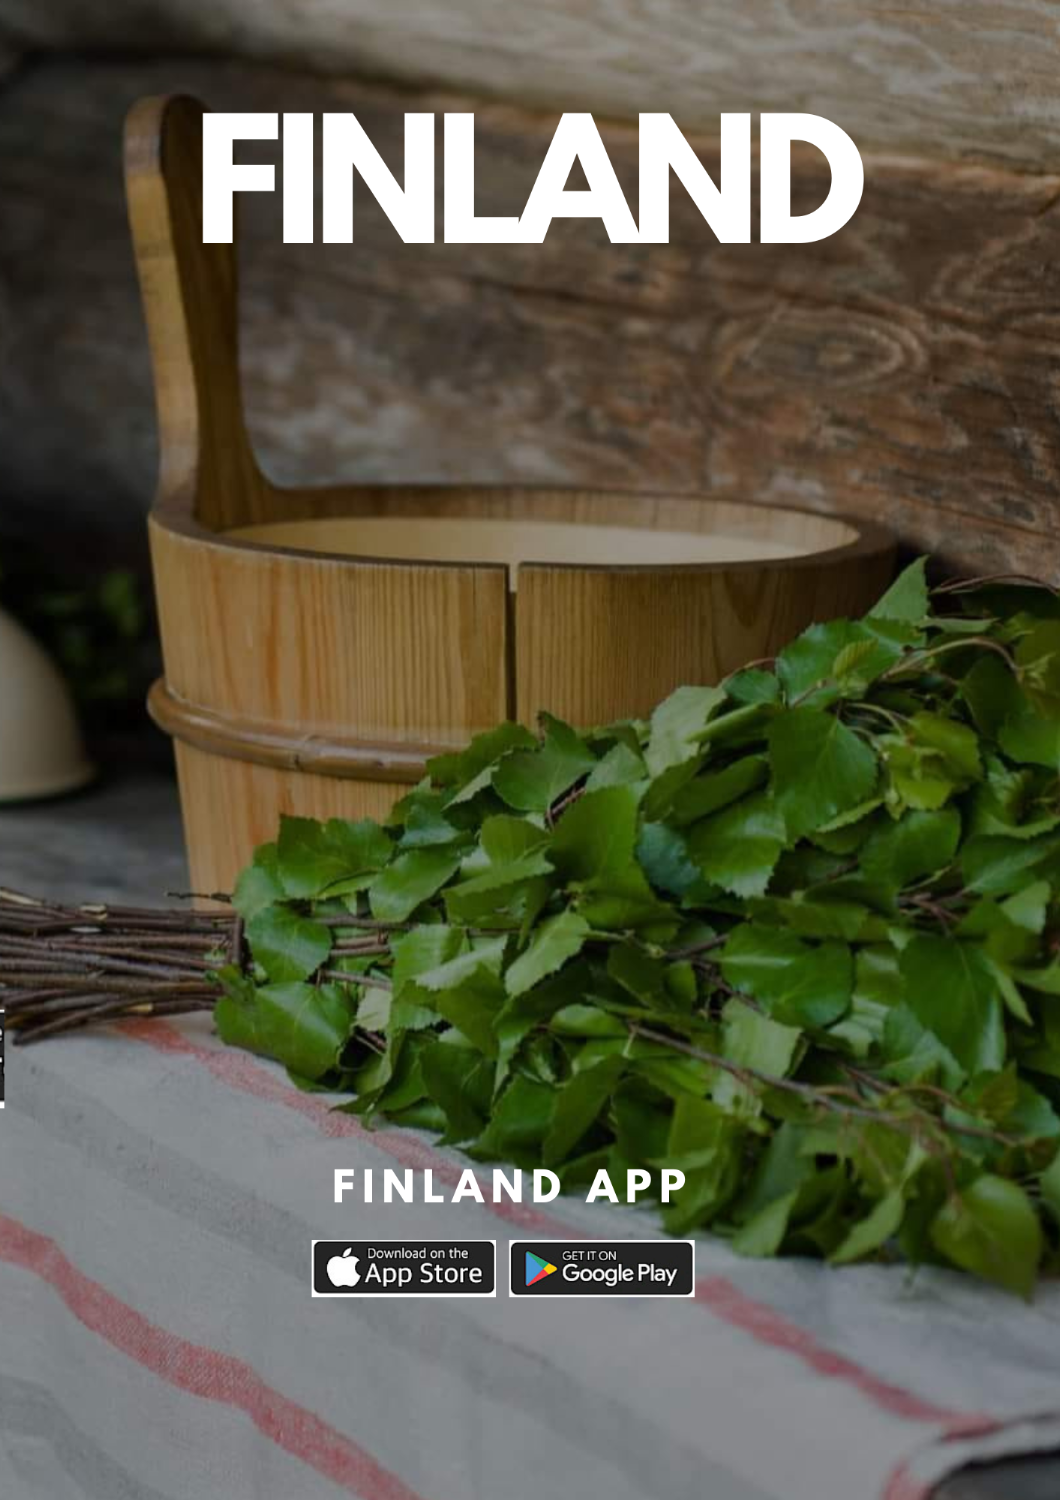 Finland -Midsummer is just around the corner